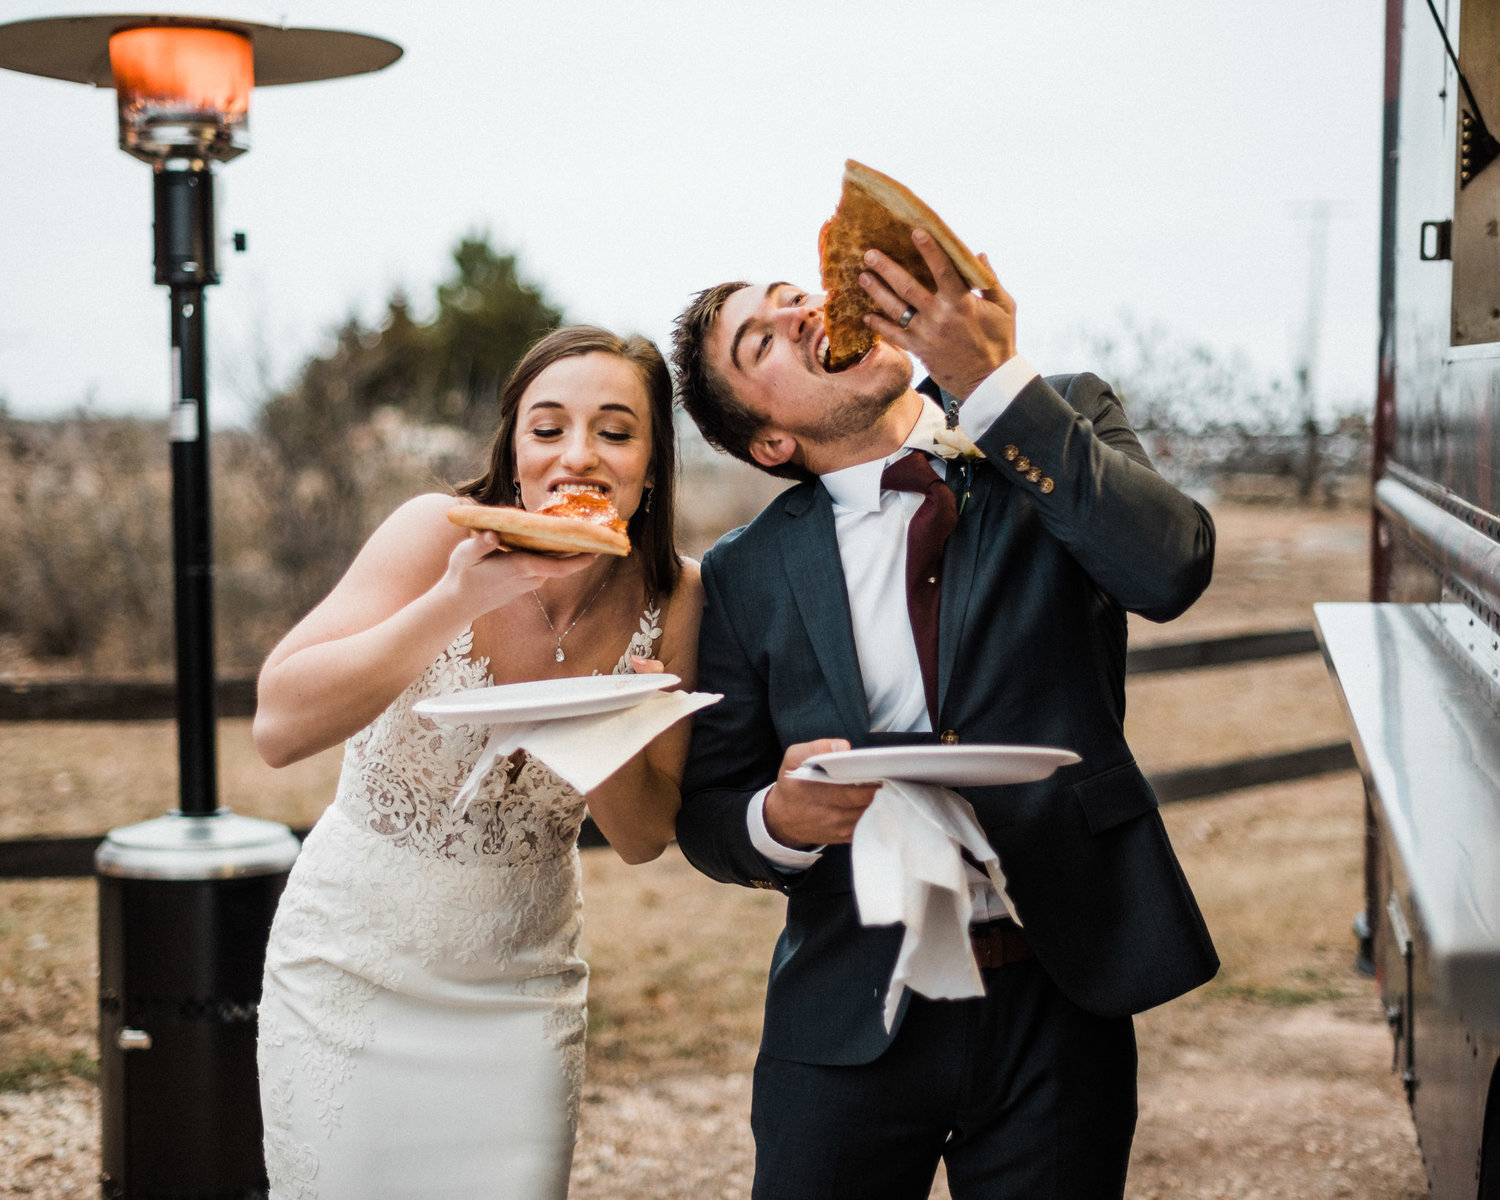 Pizza no Casamento | Ideias para um buffet criativo